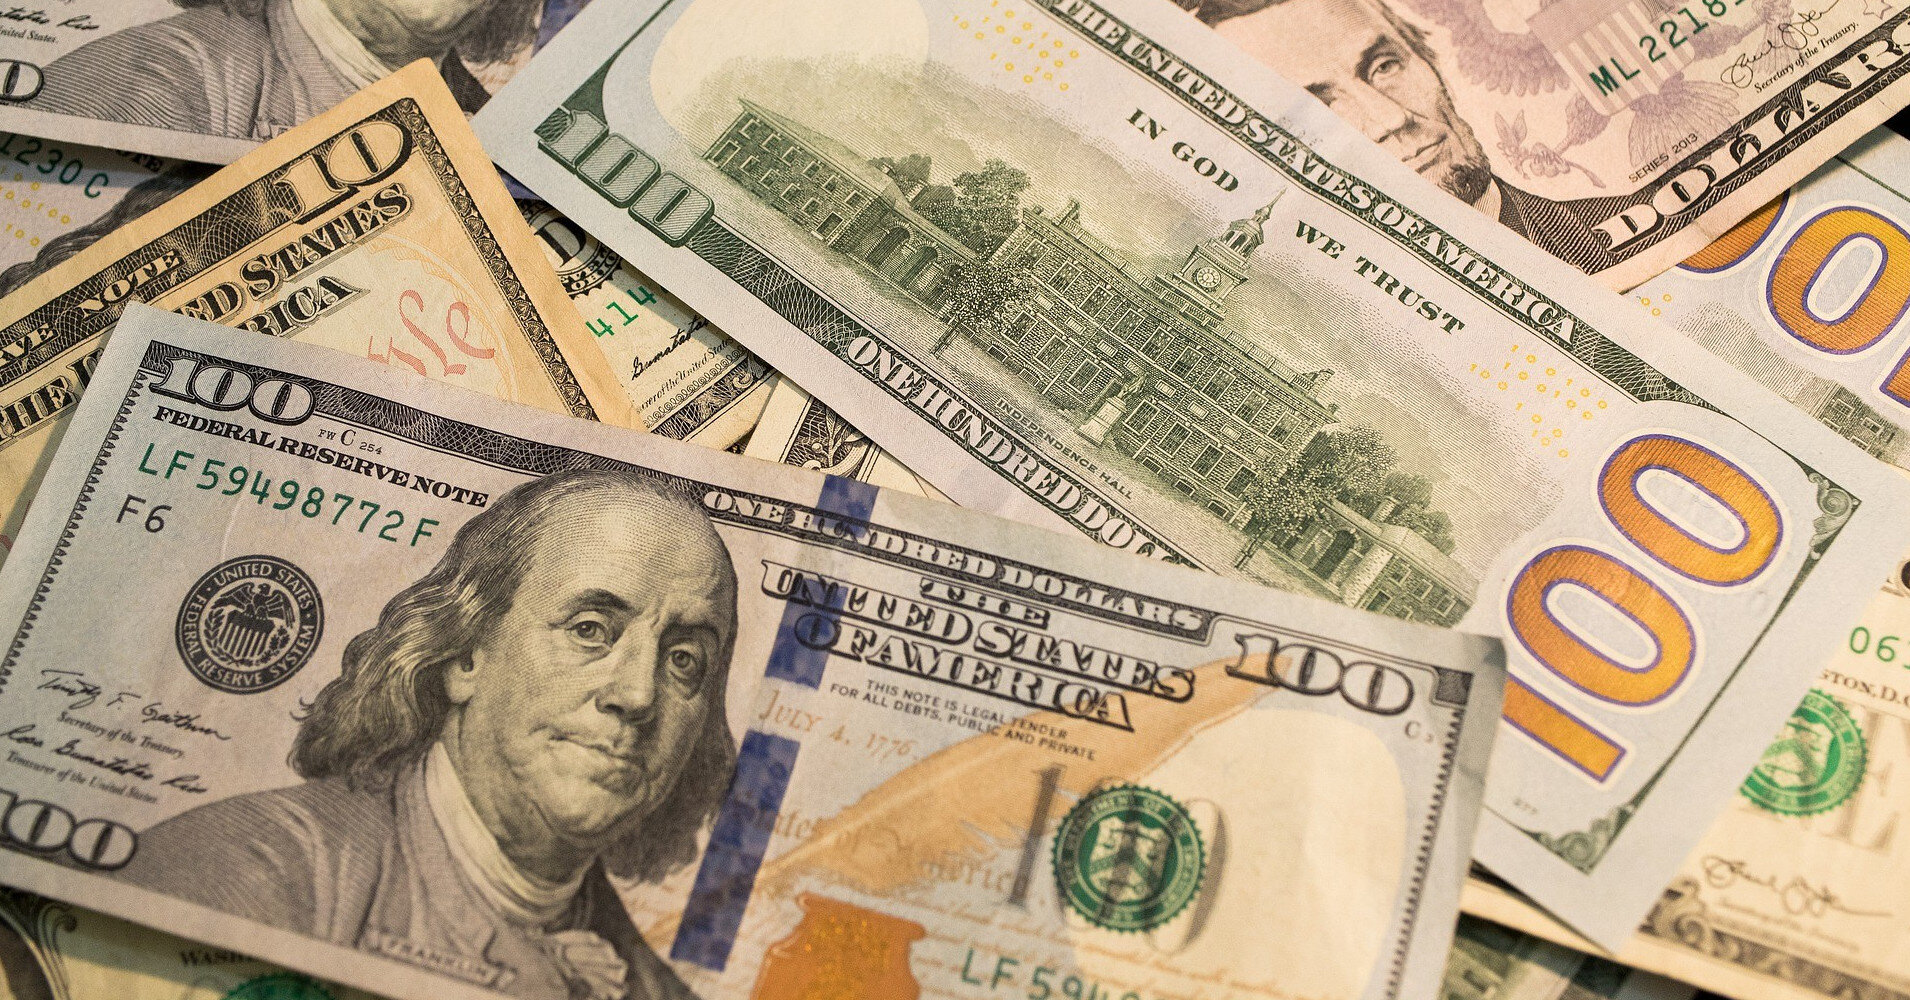 Зачем НБУ давит курс доллара вниз